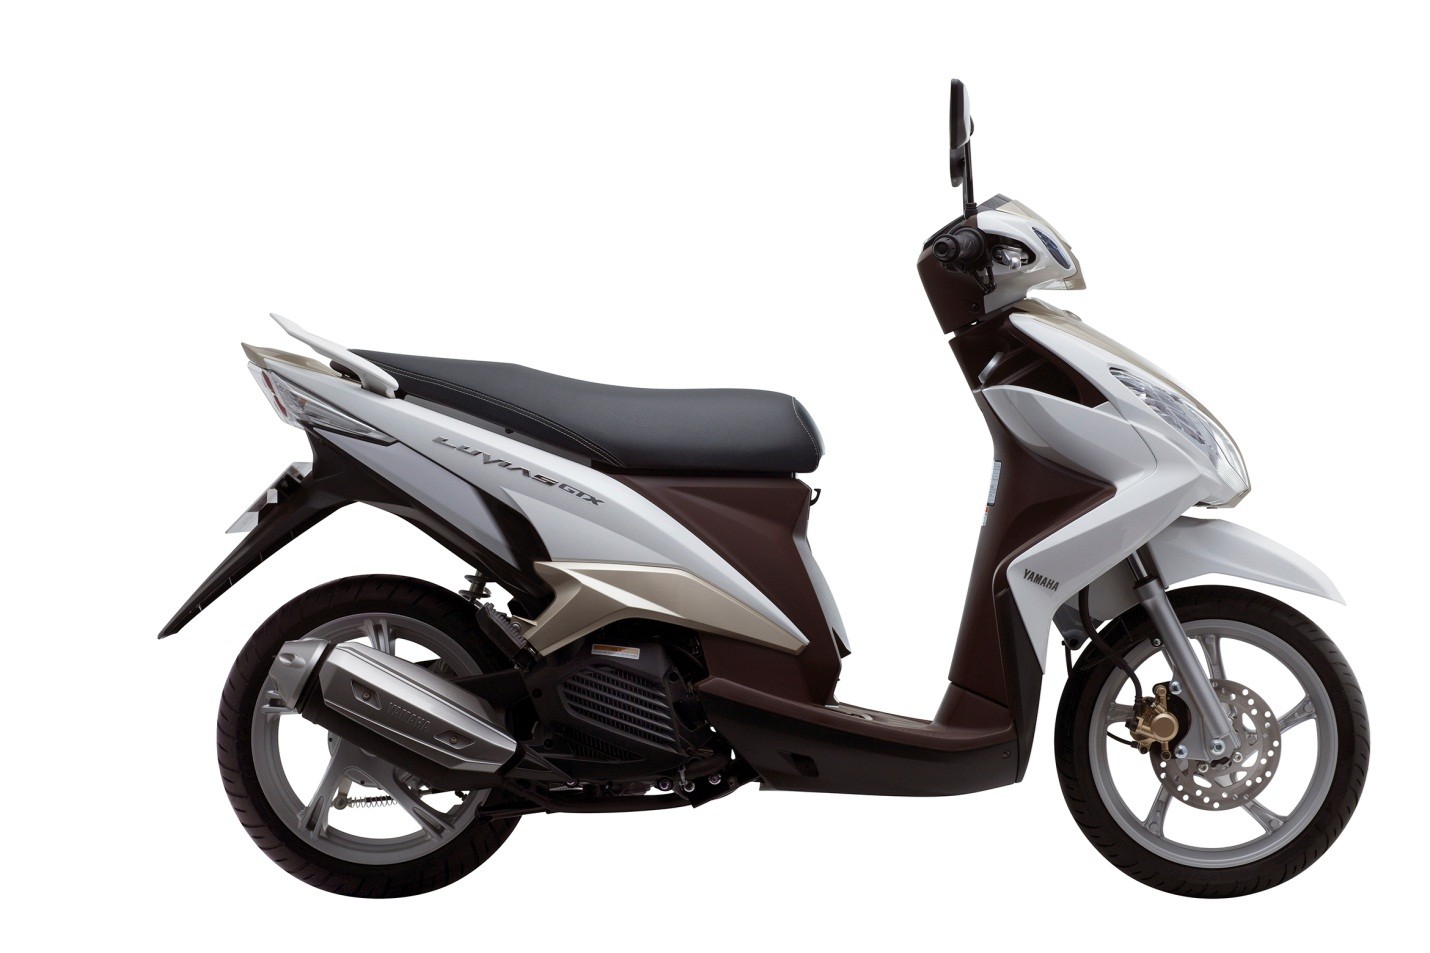 Bộ đôi xe tay ga Yamaha ra mắt thị trường Việt giá từ 282 triệu đồng